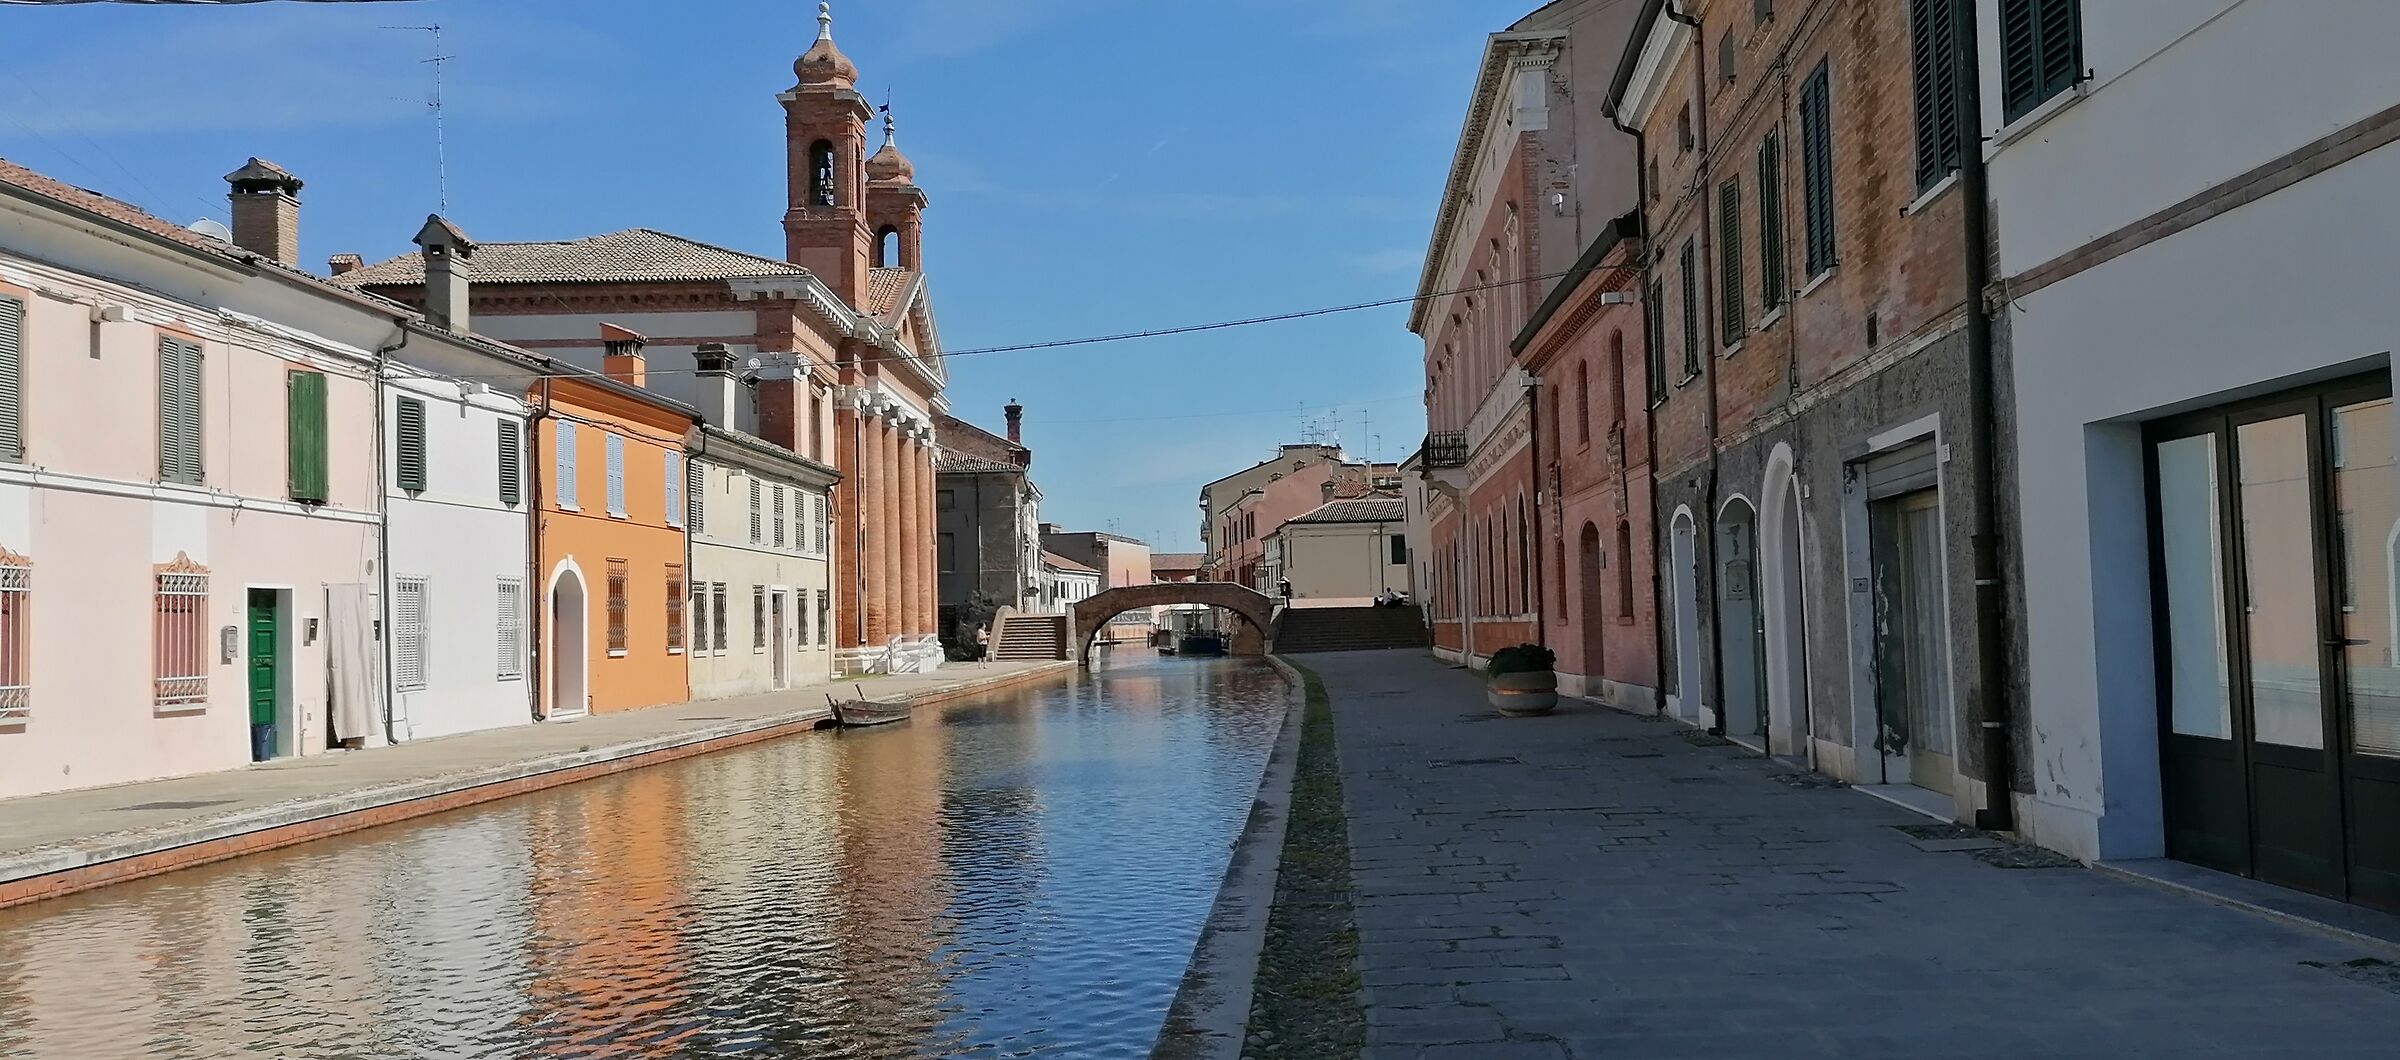 Comacchio - Italy...